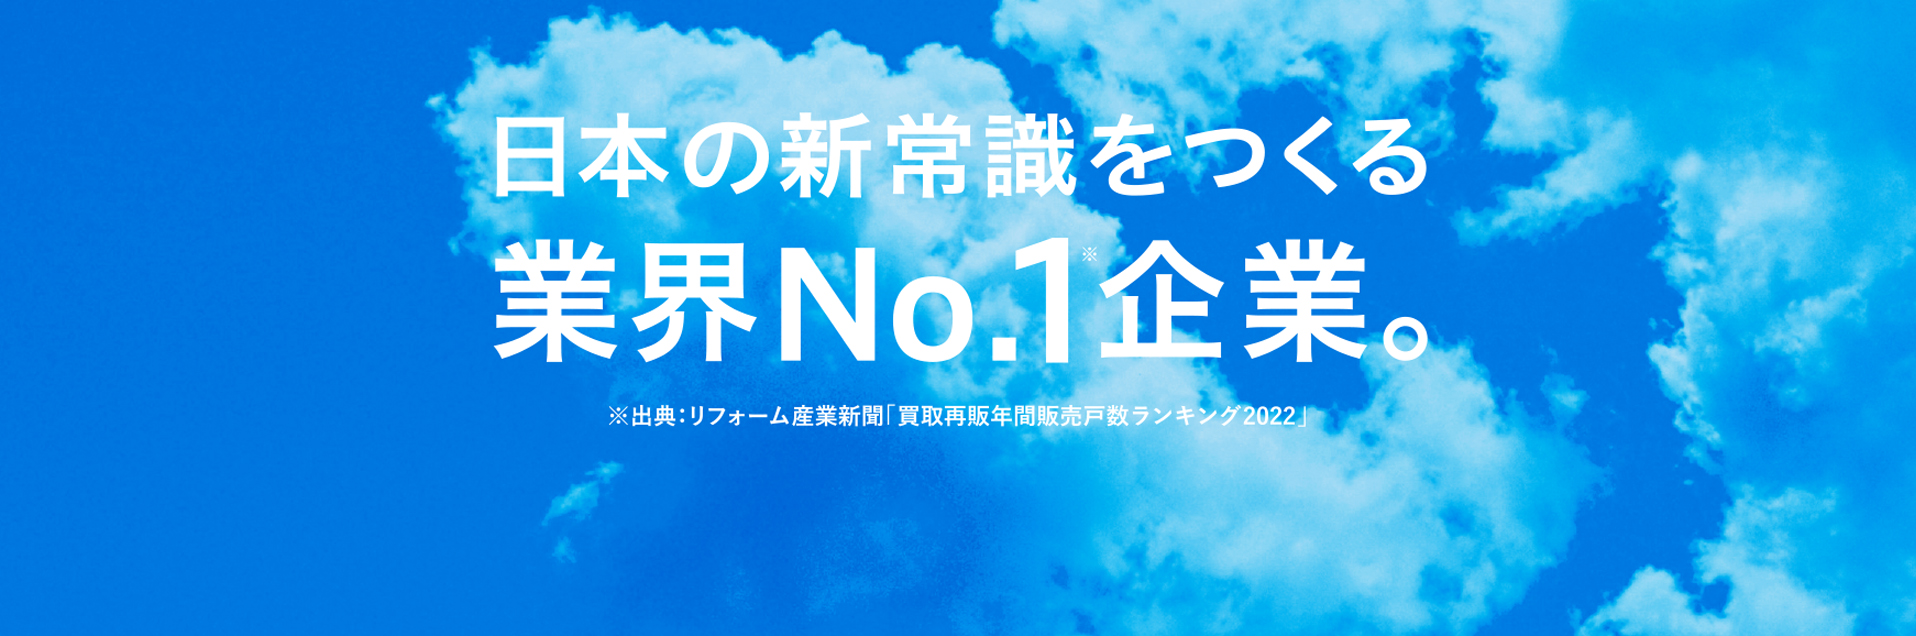 日本の新常識をつくる業界NO.1企業。